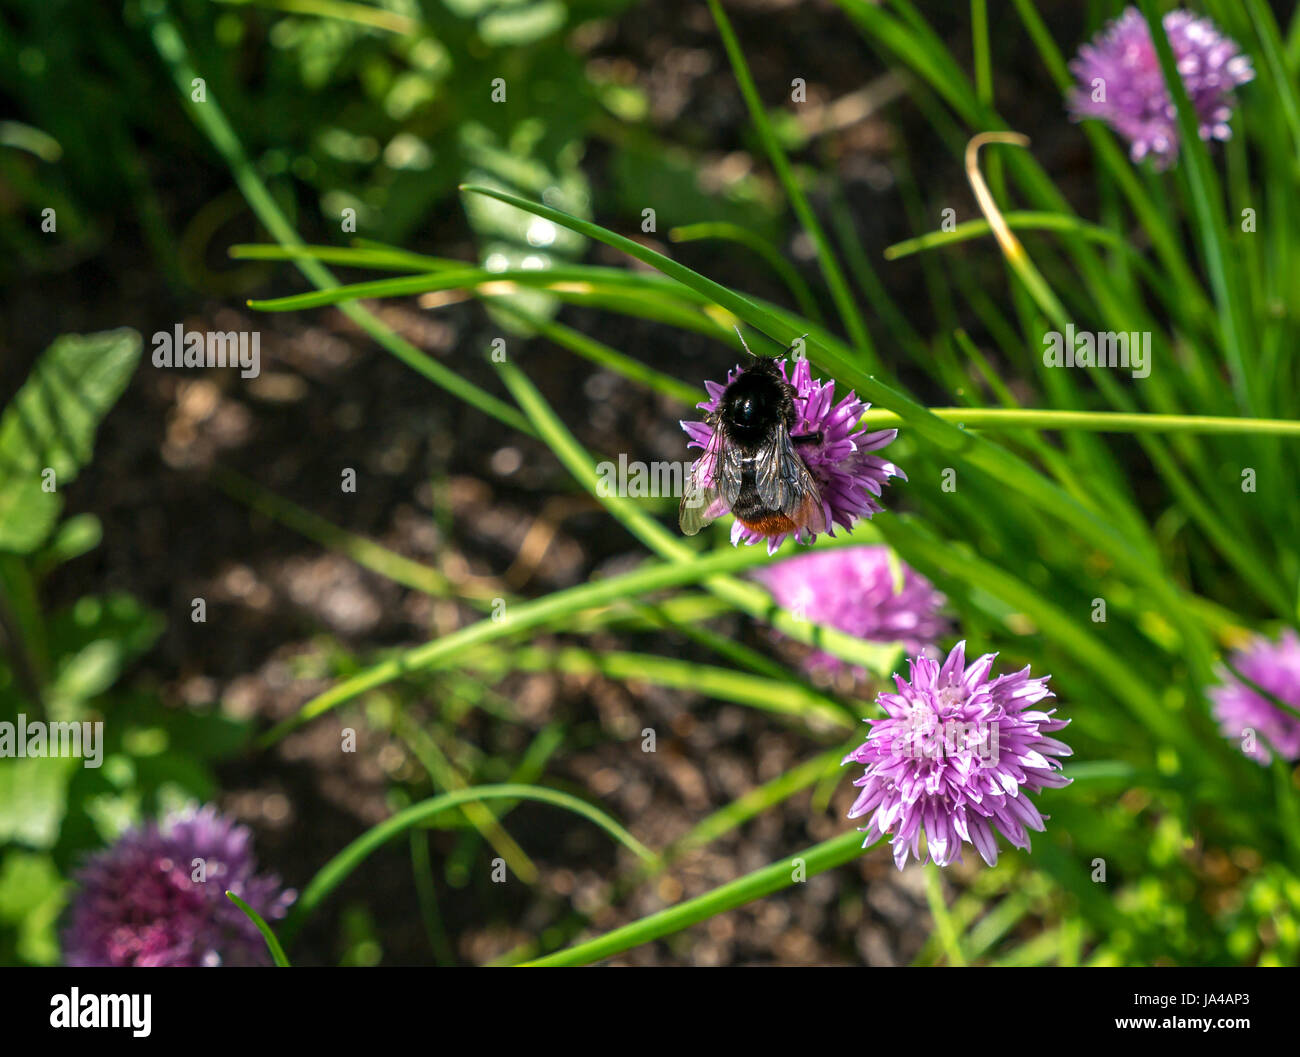 Primo piano di bumblebee dalla coda rossa, Bombus lapidarius, su fiore di erba cipollina viola, Allium schoenoprasum, Scozia, Regno Unito Foto Stock